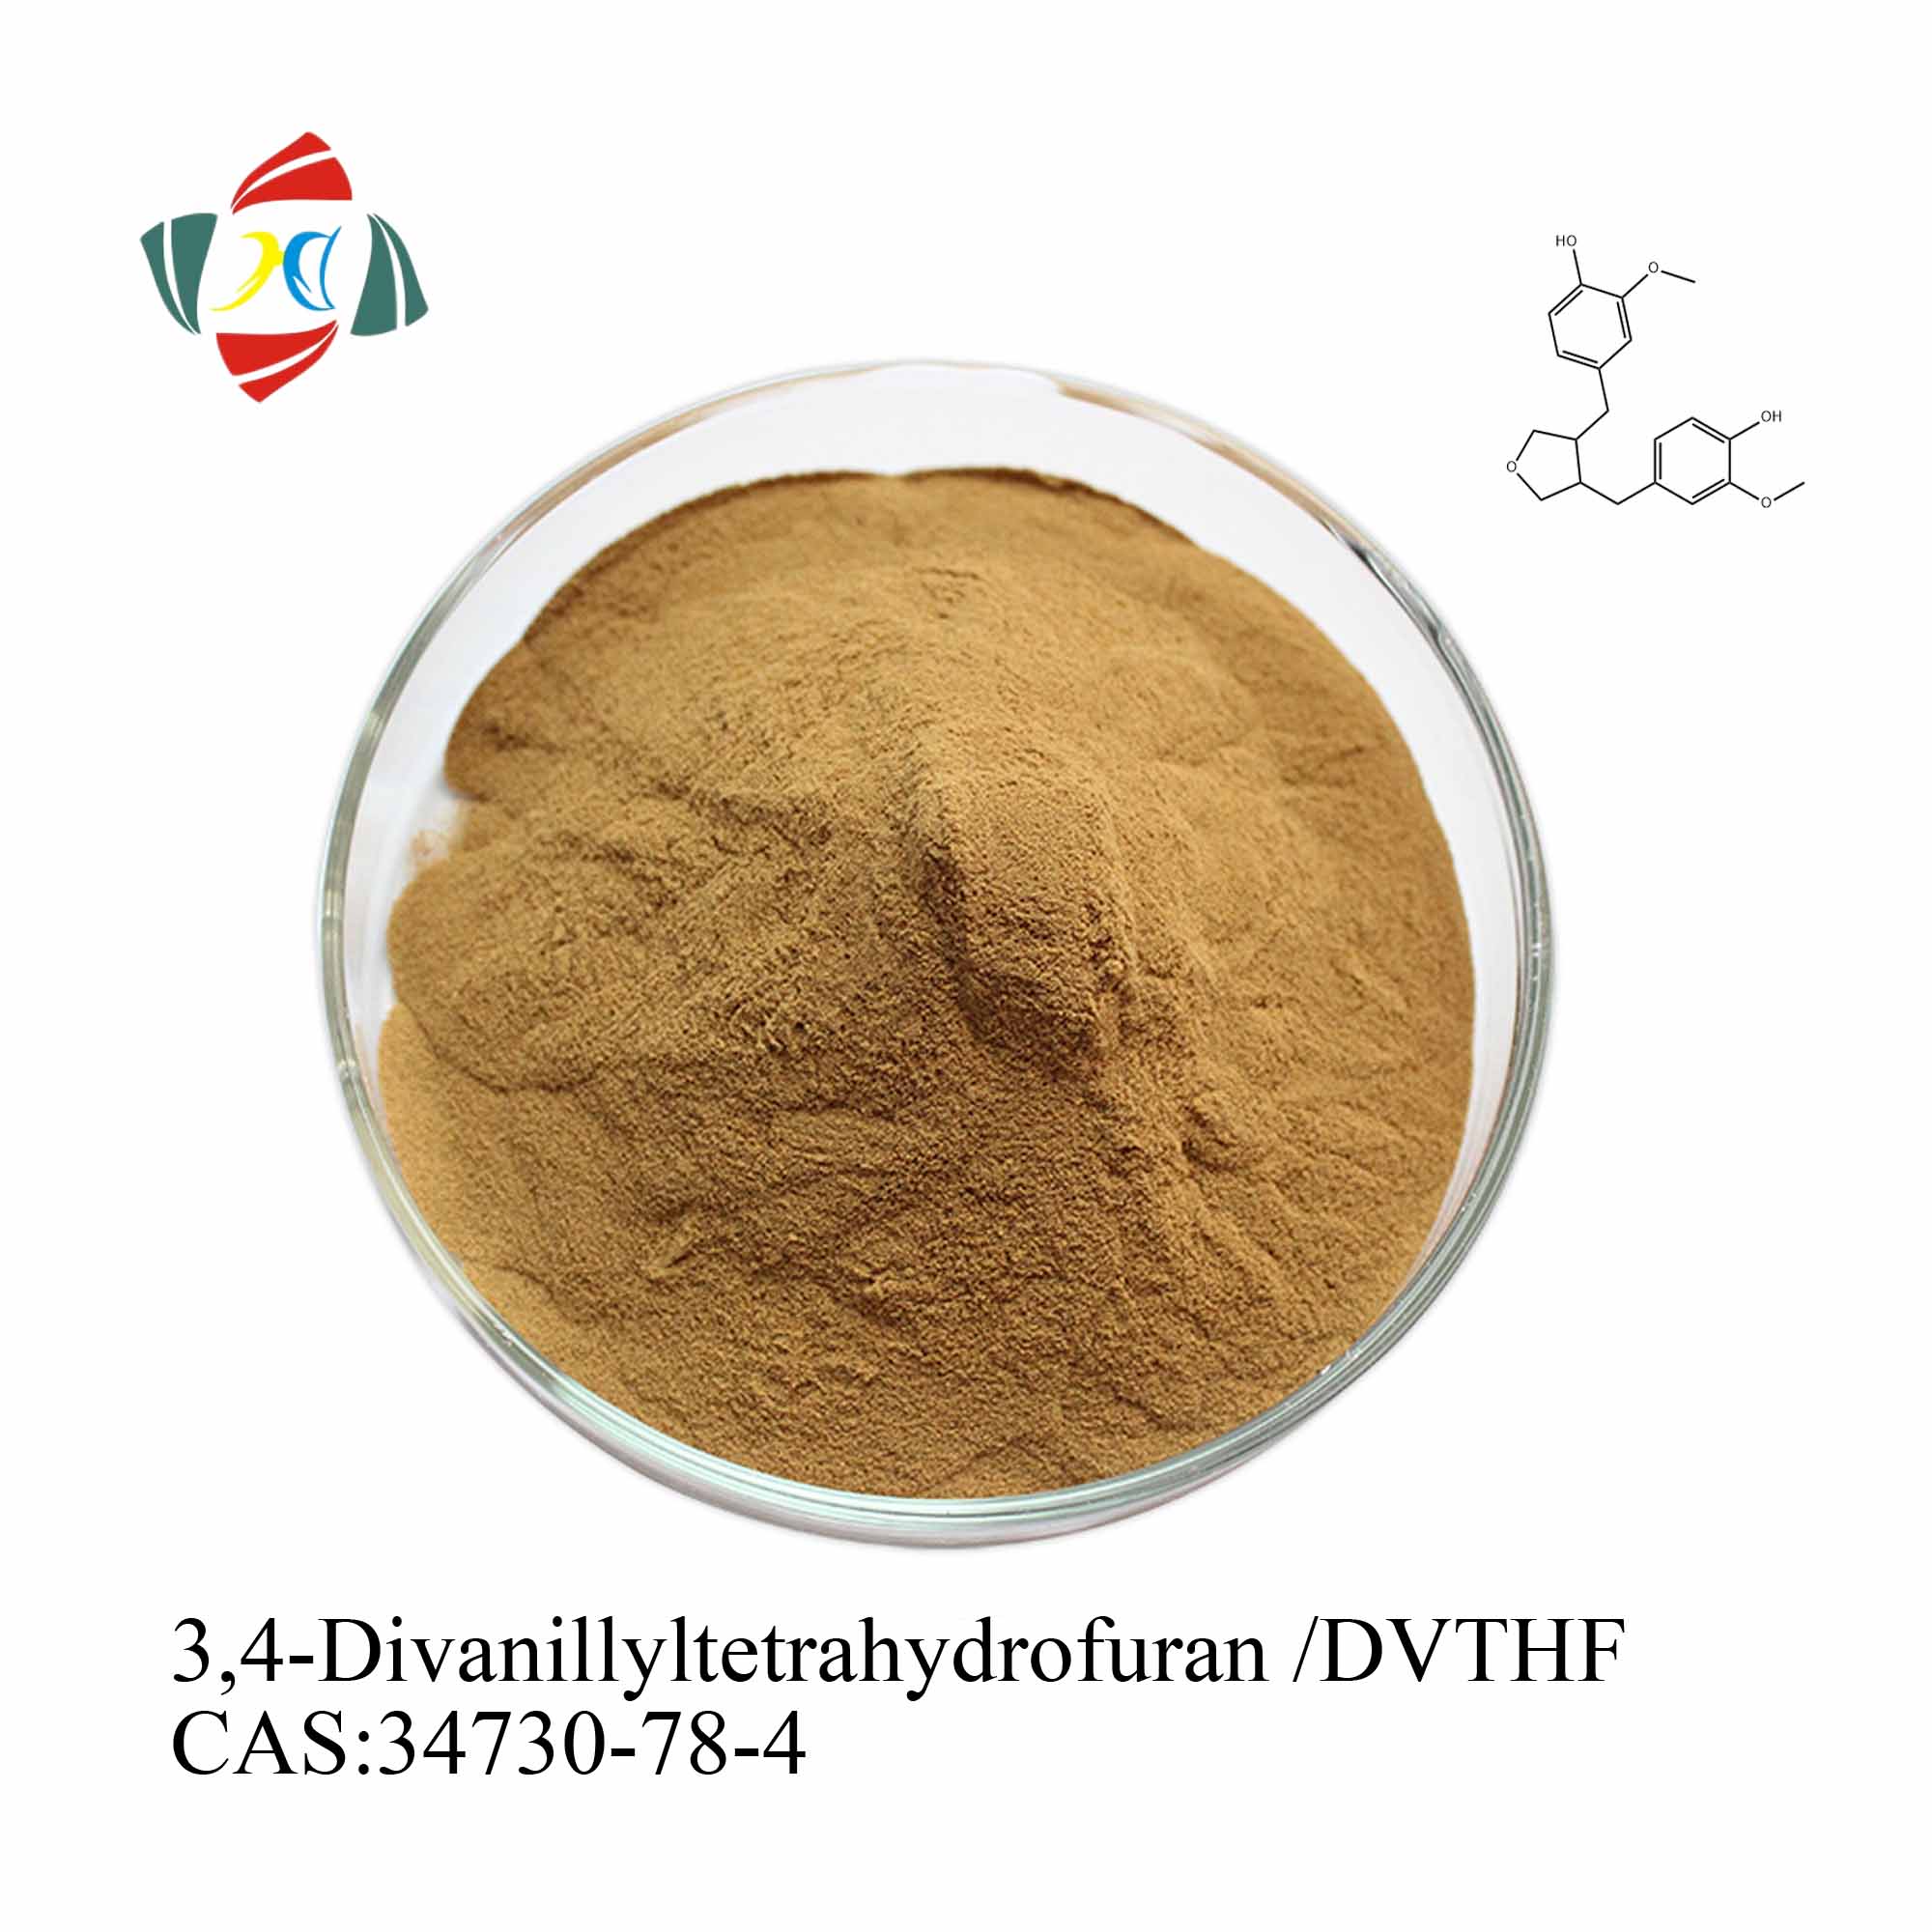 Comprar Extracto de raíz de ortiga de alta calidad 45 % 6,7-dihidroxibergamotina/DHB 95 % 3,4-divanilliltetrahidrofurano/DVTHF, Extracto de raíz de ortiga de alta calidad 45 % 6,7-dihidroxibergamotina/DHB 95 % 3,4-divanilliltetrahidrofurano/DVTHF Precios, Extracto de raíz de ortiga de alta calidad 45 % 6,7-dihidroxibergamotina/DHB 95 % 3,4-divanilliltetrahidrofurano/DVTHF Marcas, Extracto de raíz de ortiga de alta calidad 45 % 6,7-dihidroxibergamotina/DHB 95 % 3,4-divanilliltetrahidrofurano/DVTHF Fabricante, Extracto de raíz de ortiga de alta calidad 45 % 6,7-dihidroxibergamotina/DHB 95 % 3,4-divanilliltetrahidrofurano/DVTHF Citas, Extracto de raíz de ortiga de alta calidad 45 % 6,7-dihidroxibergamotina/DHB 95 % 3,4-divanilliltetrahidrofurano/DVTHF Empresa.